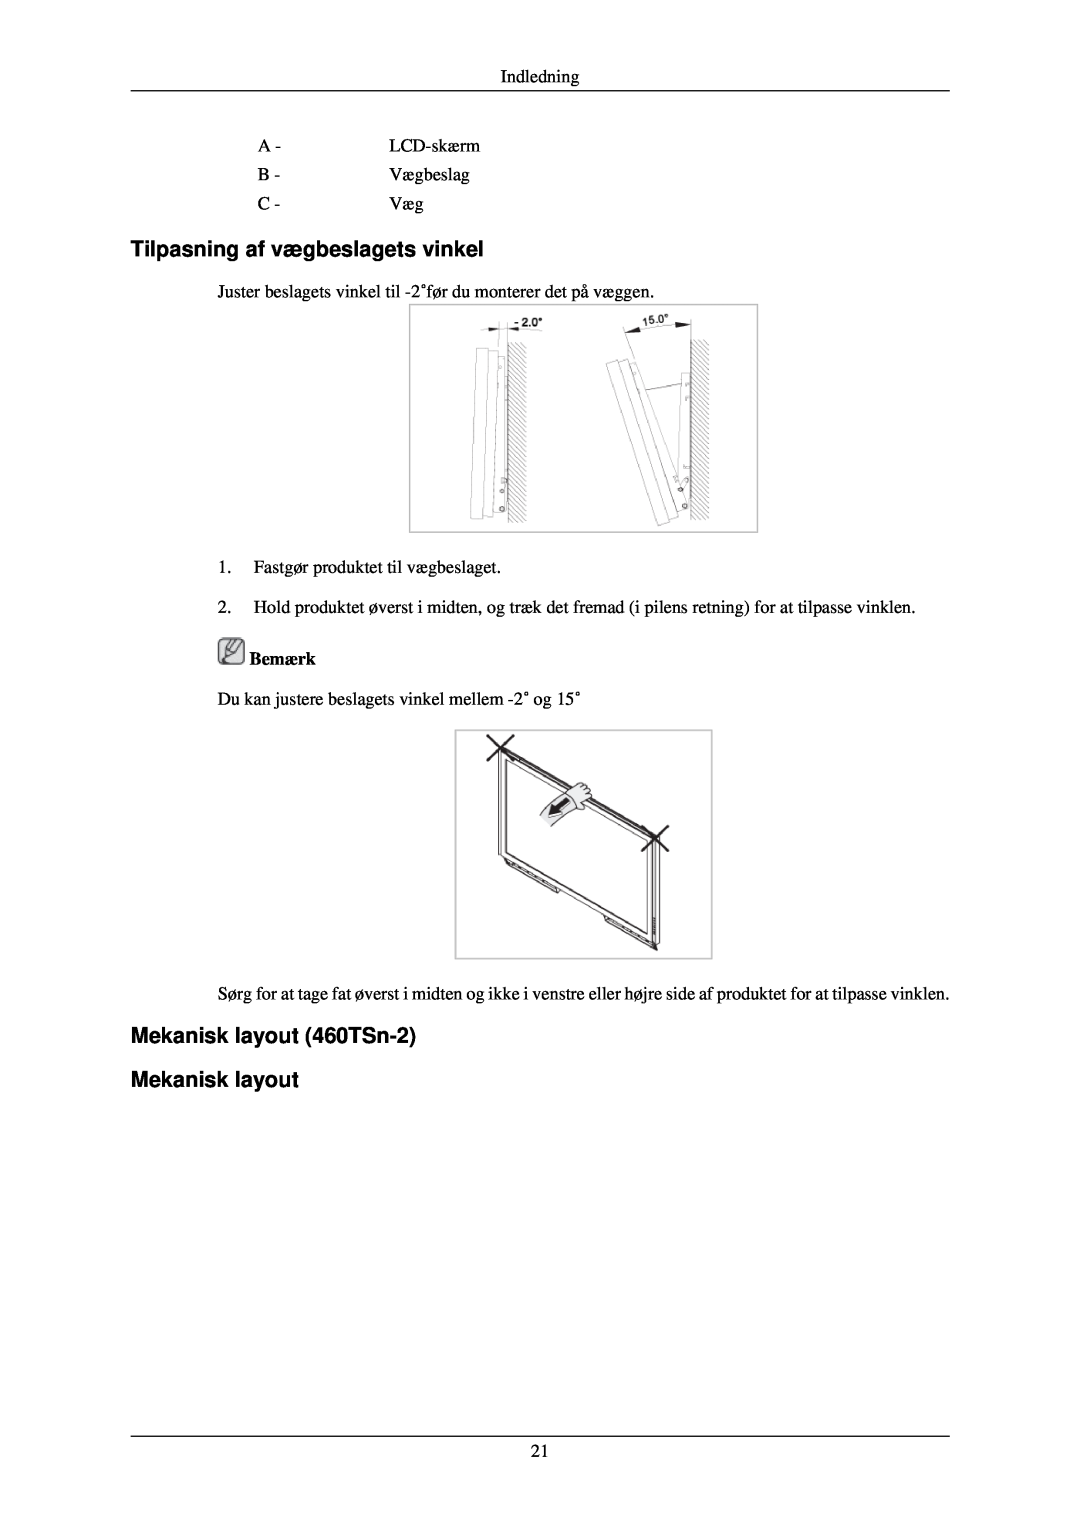 Samsung LH40TCQMBG/EN, LH40TCUMBG/EN Tilpasning af vægbeslagets vinkel, Mekanisk layout 460TSn-2 Mekanisk layout, Bemærk 